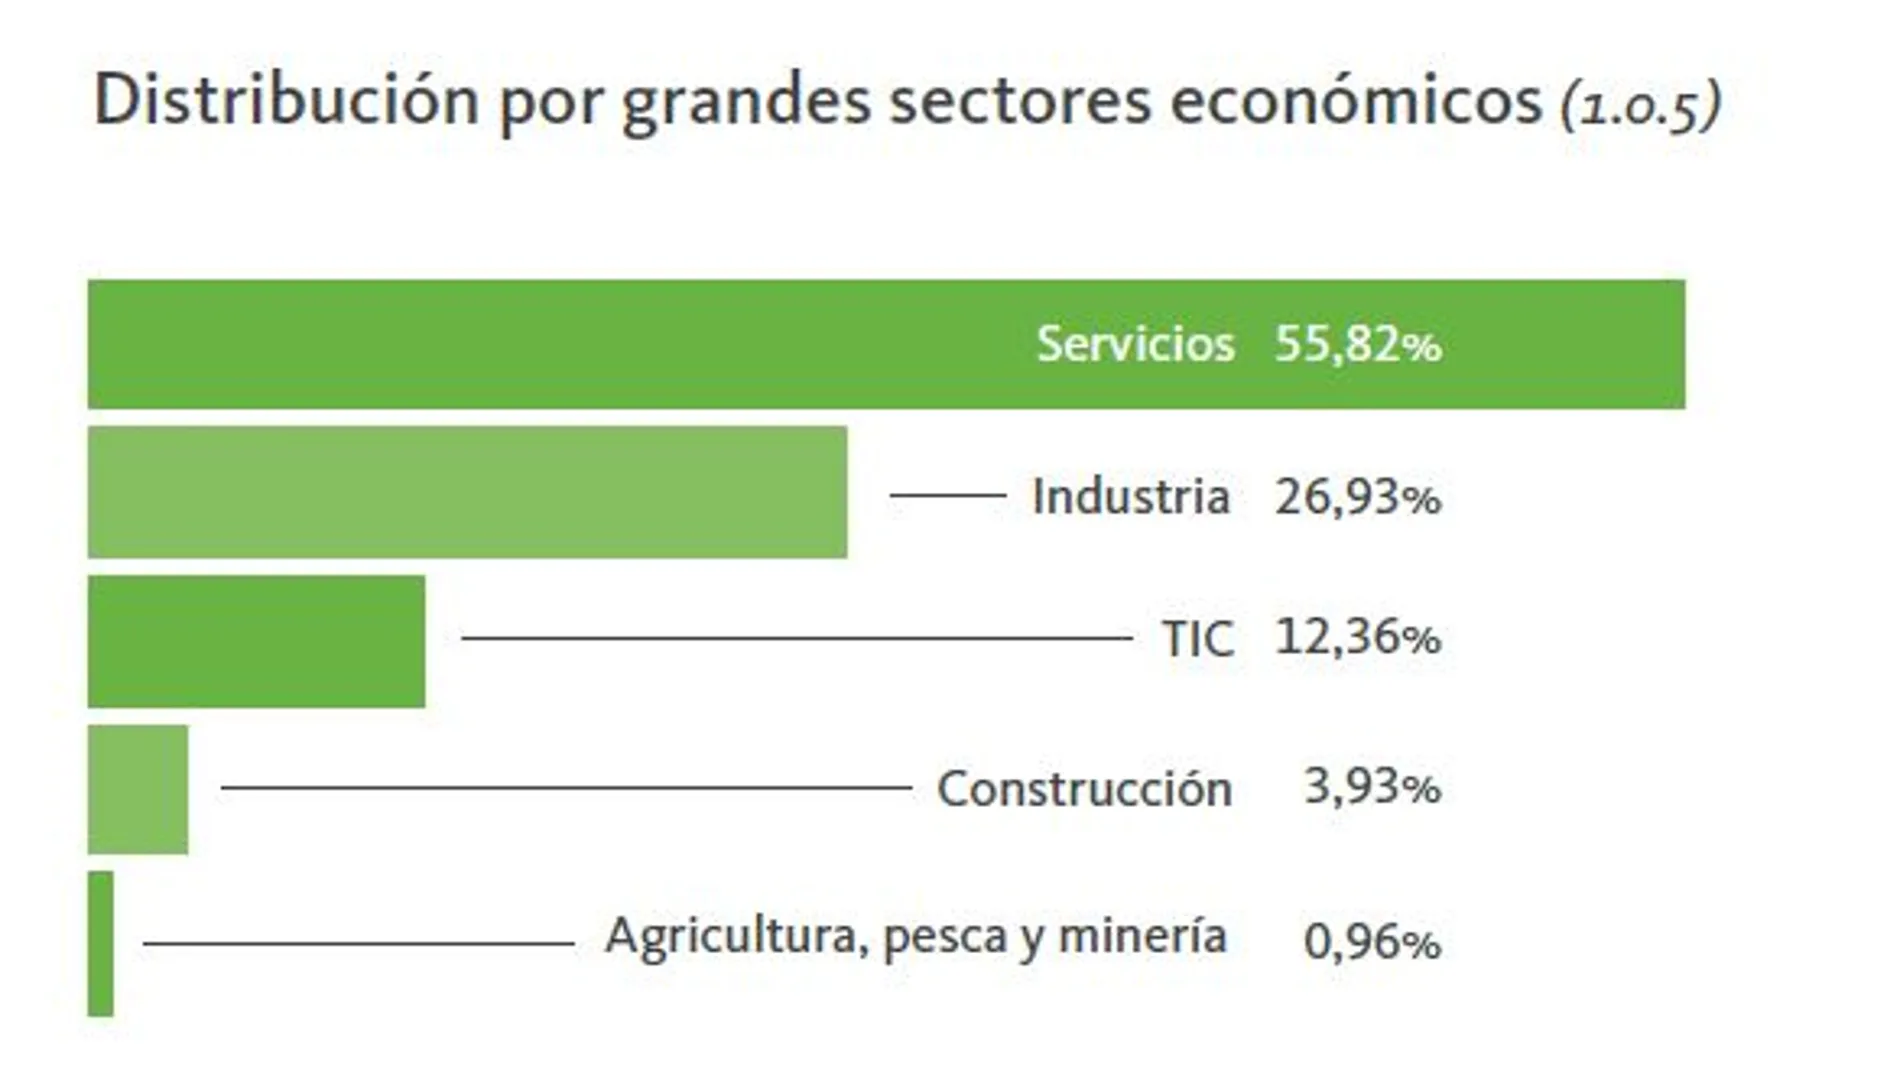 Distribución por grandes sectores económicos / Foto: Informe Infoempleo-Adecco